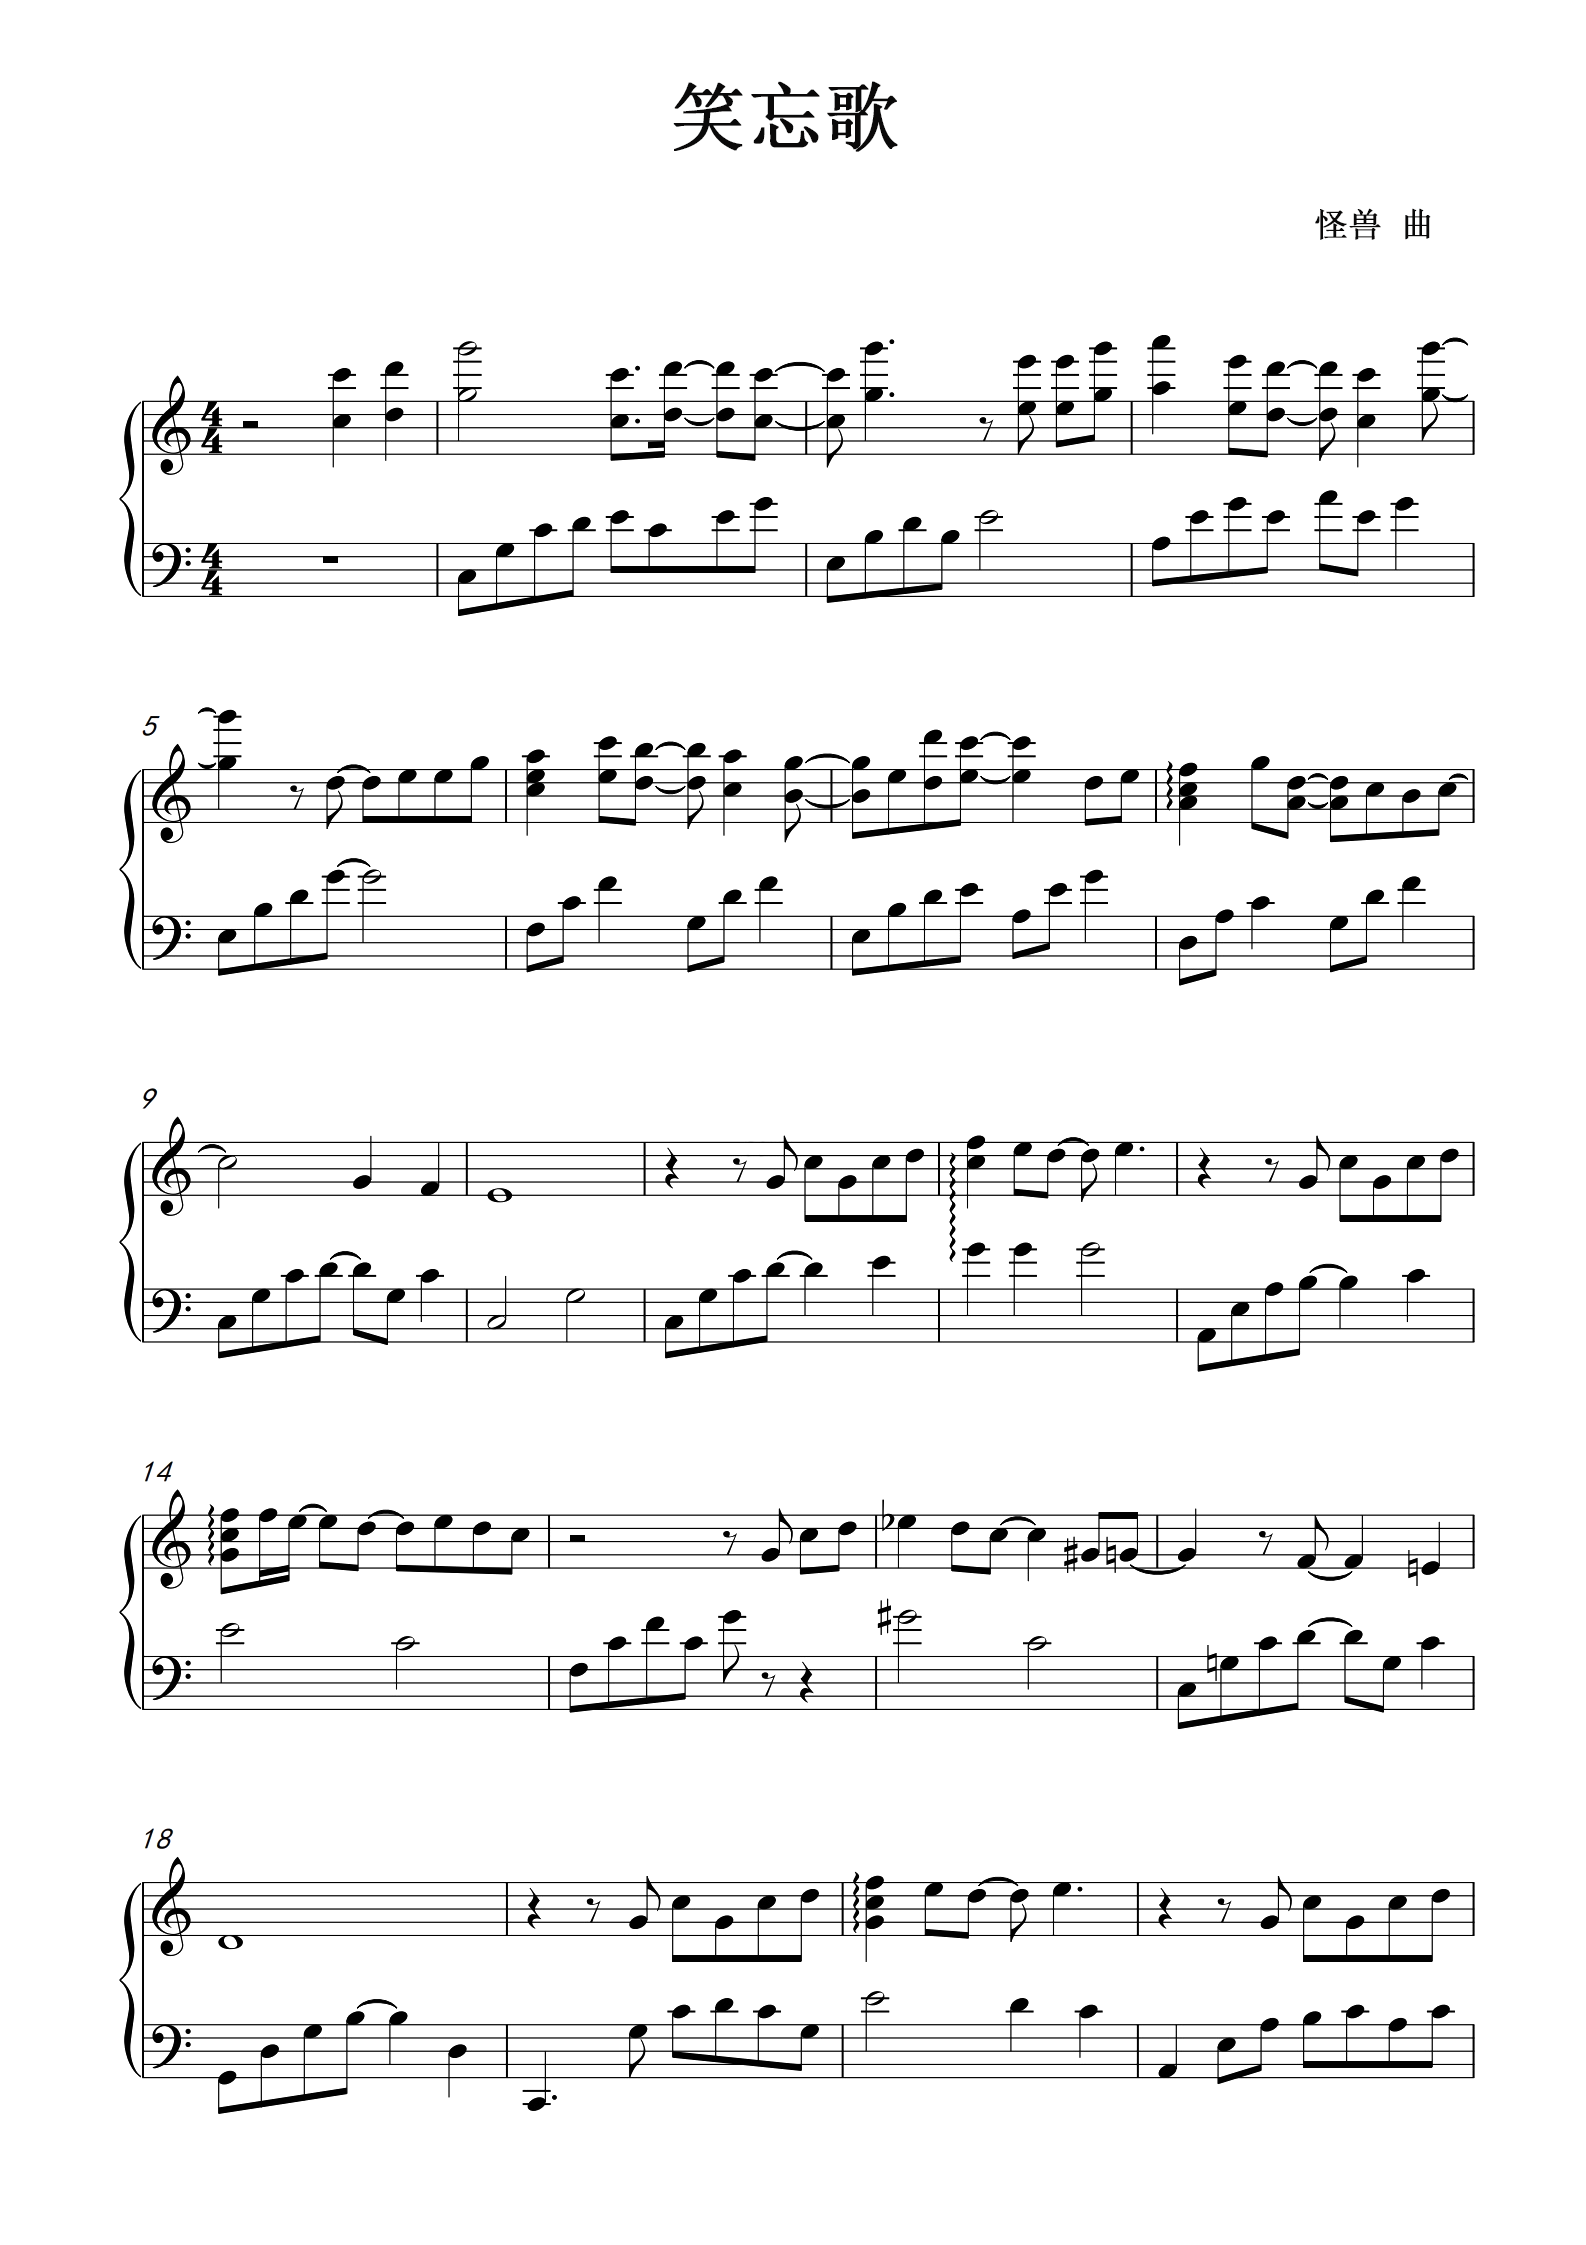 笑忘歌-五月天五线谱预览4-钢琴谱文件（五线谱、双手简谱、数字谱、Midi、PDF）免费下载